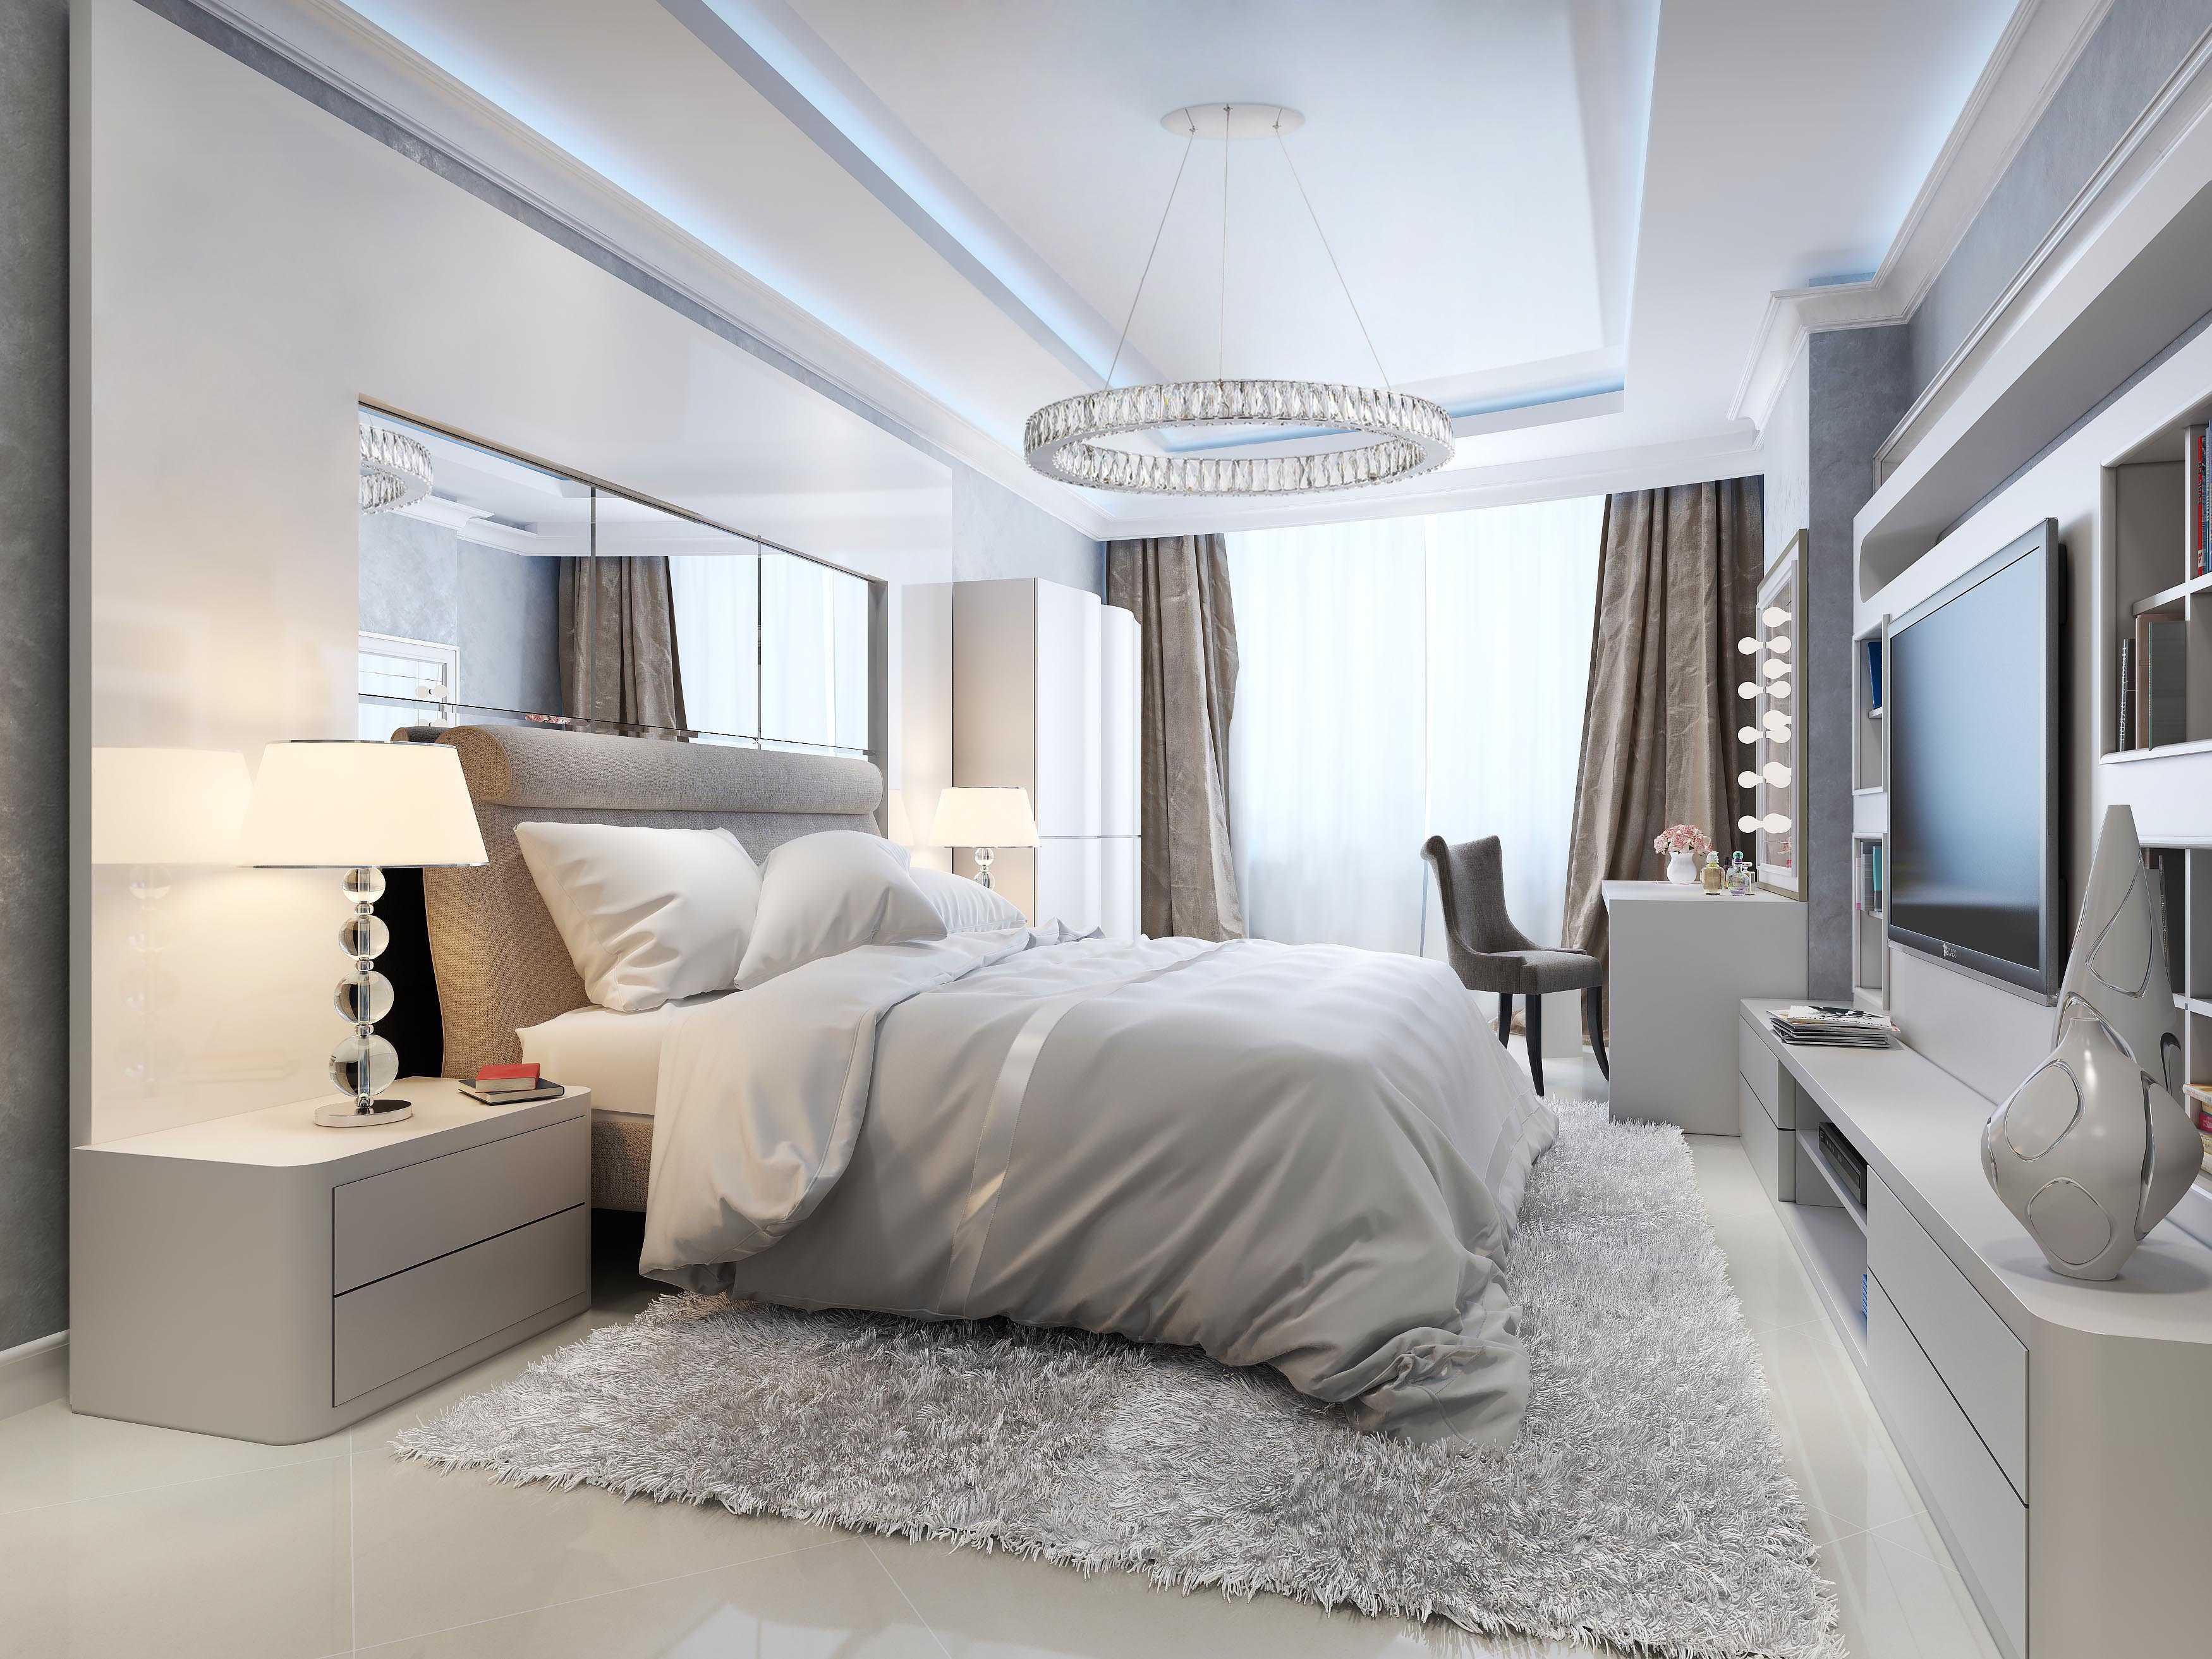 Чем отличается современный дизайн спальни Смотрите свежие фото 2016 года и получите лучшие современные идеи для подбора мебели и декора в спальню